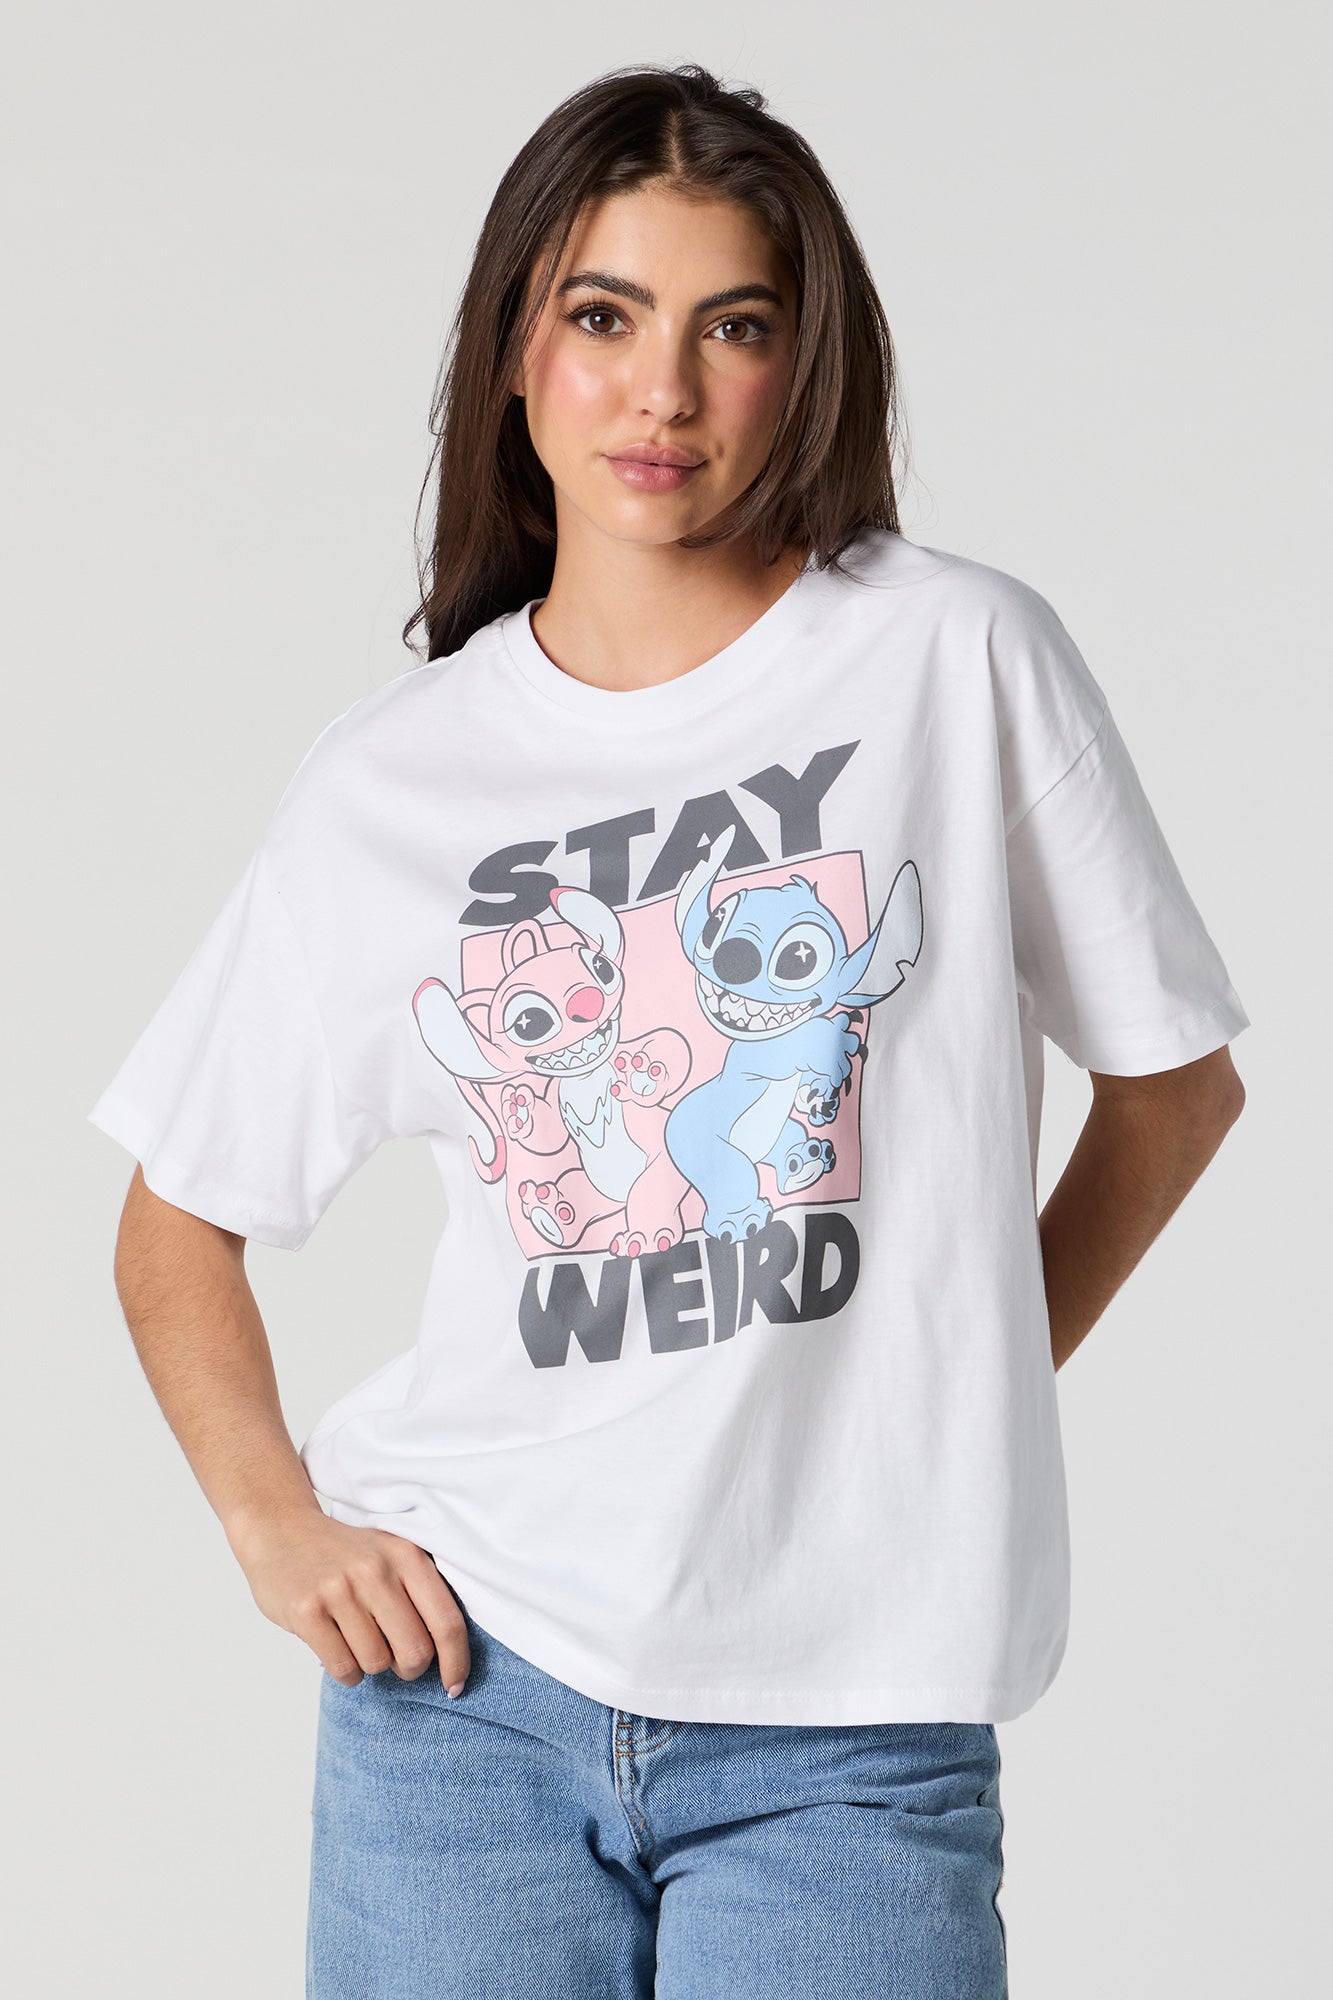 Stay Weird Stitch Graphic Boyfriend T-Shirt